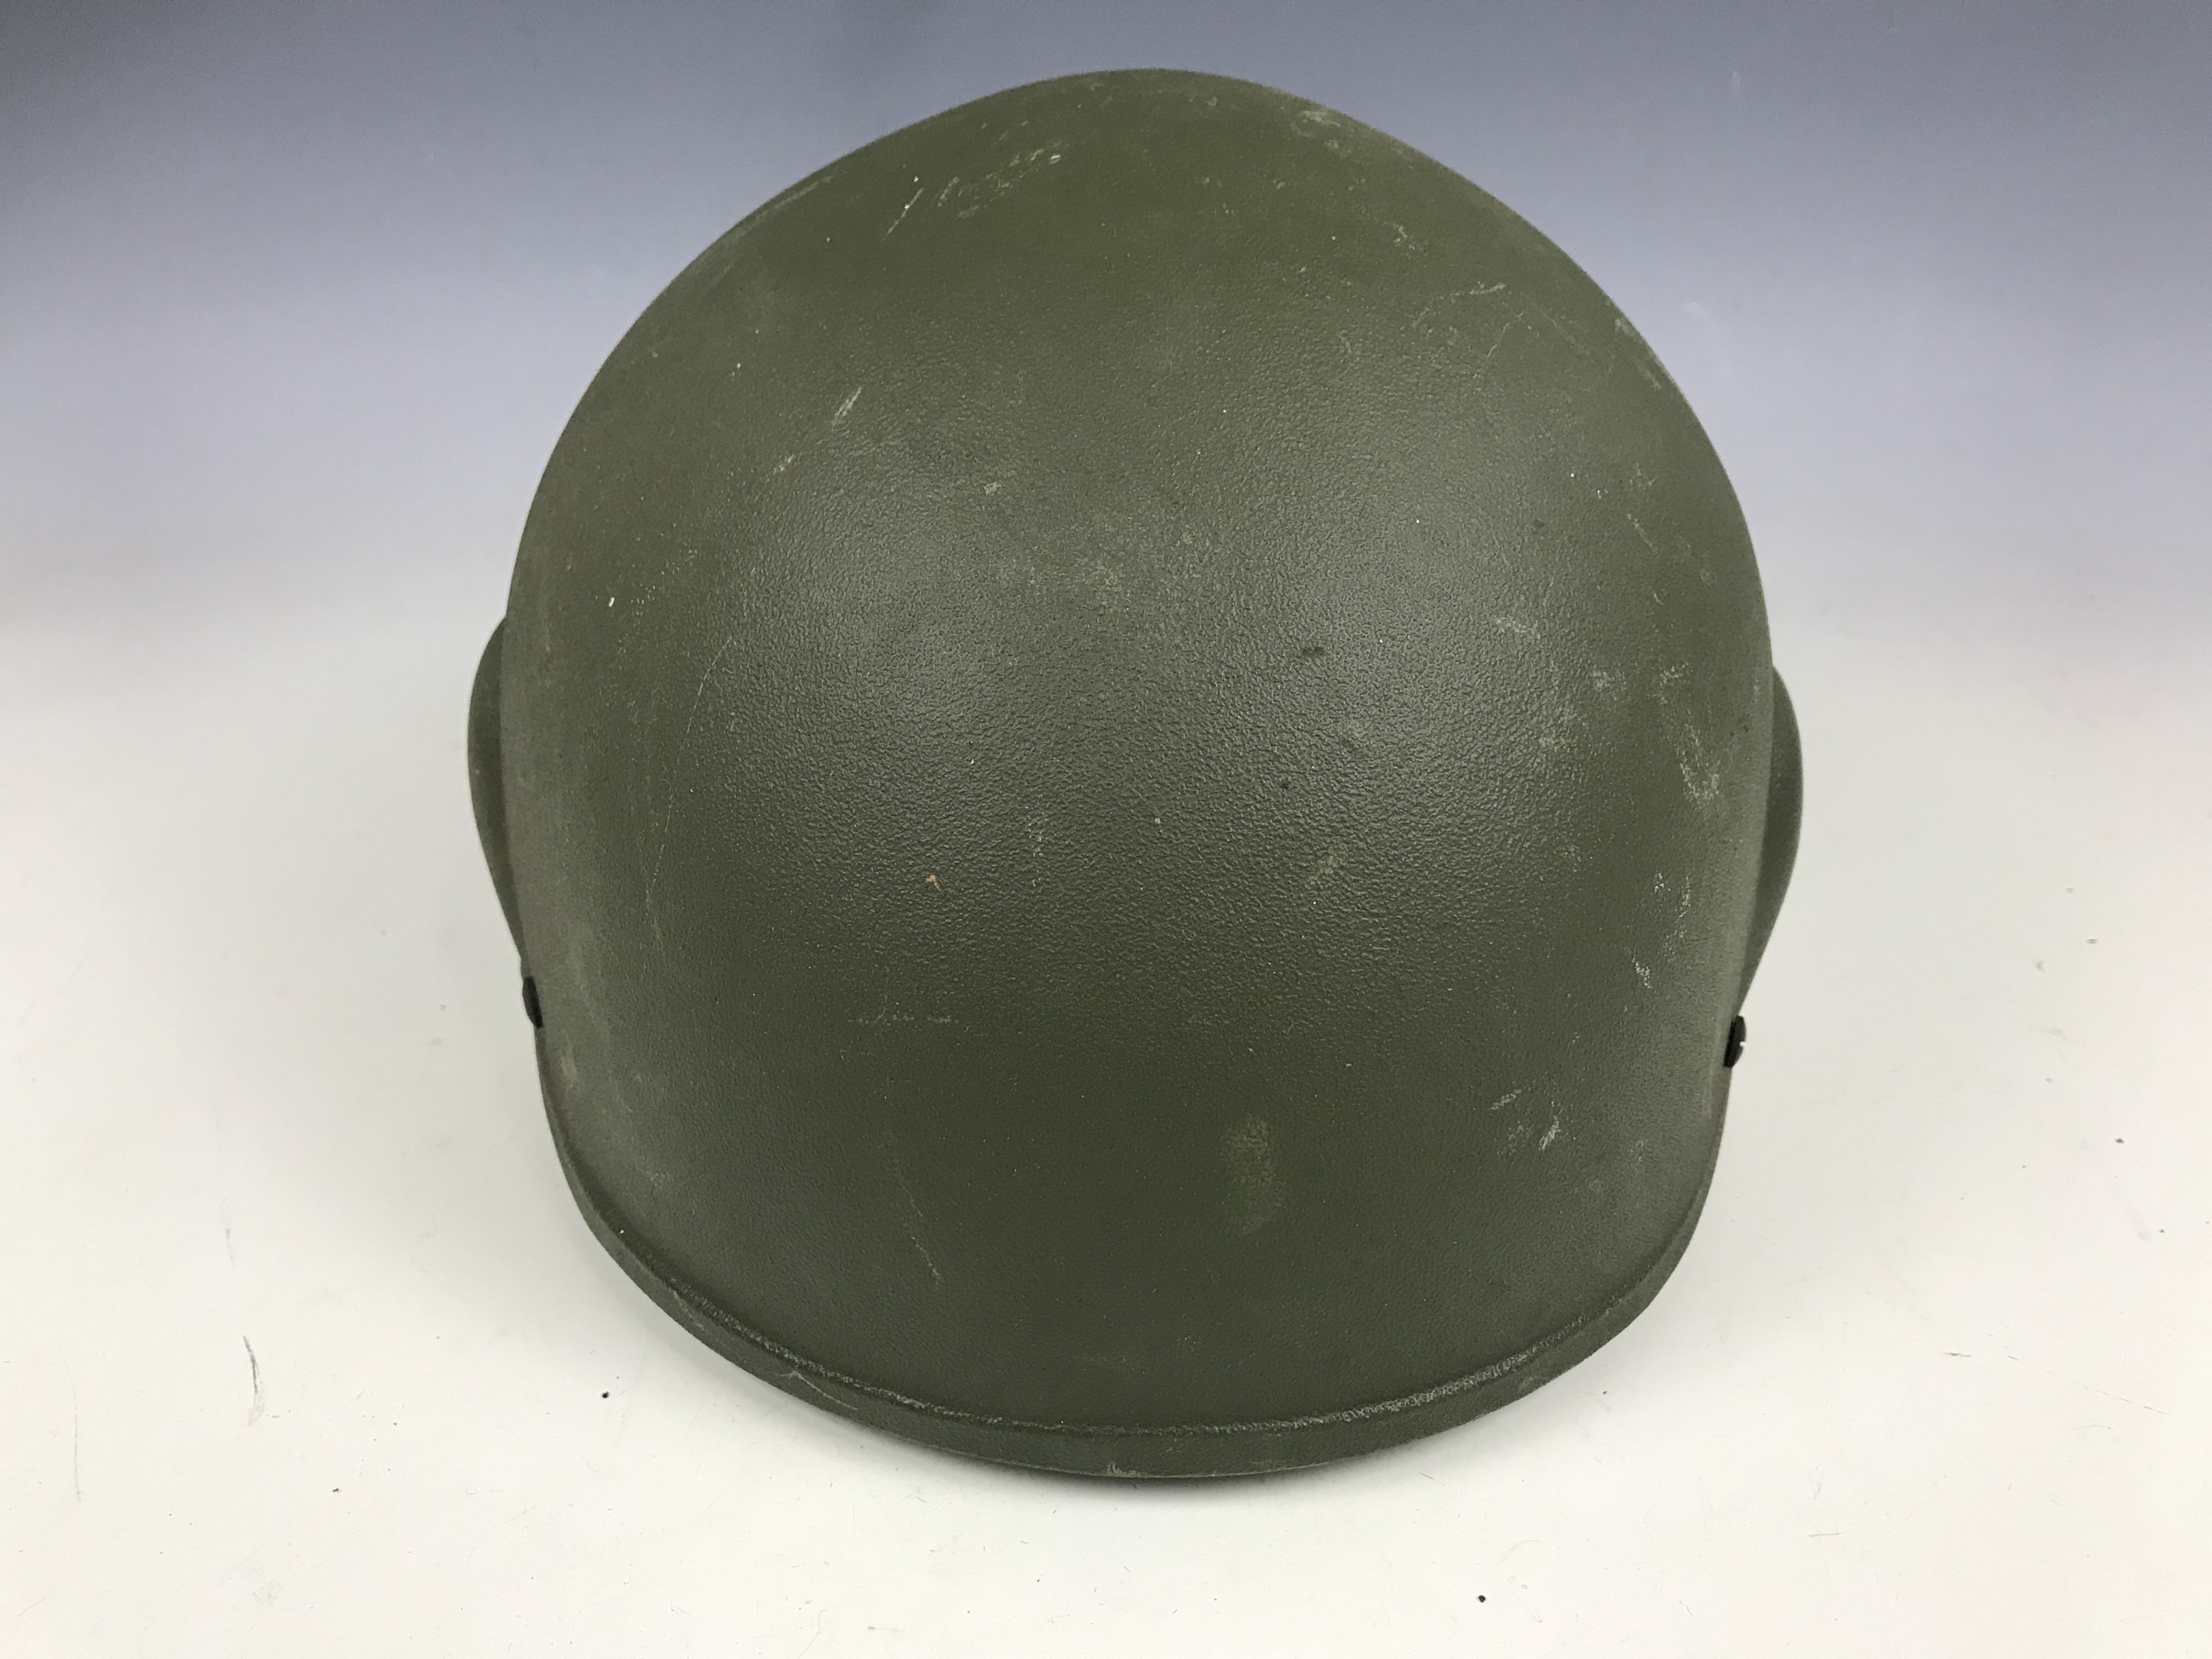 A British Army Kevlar helmet